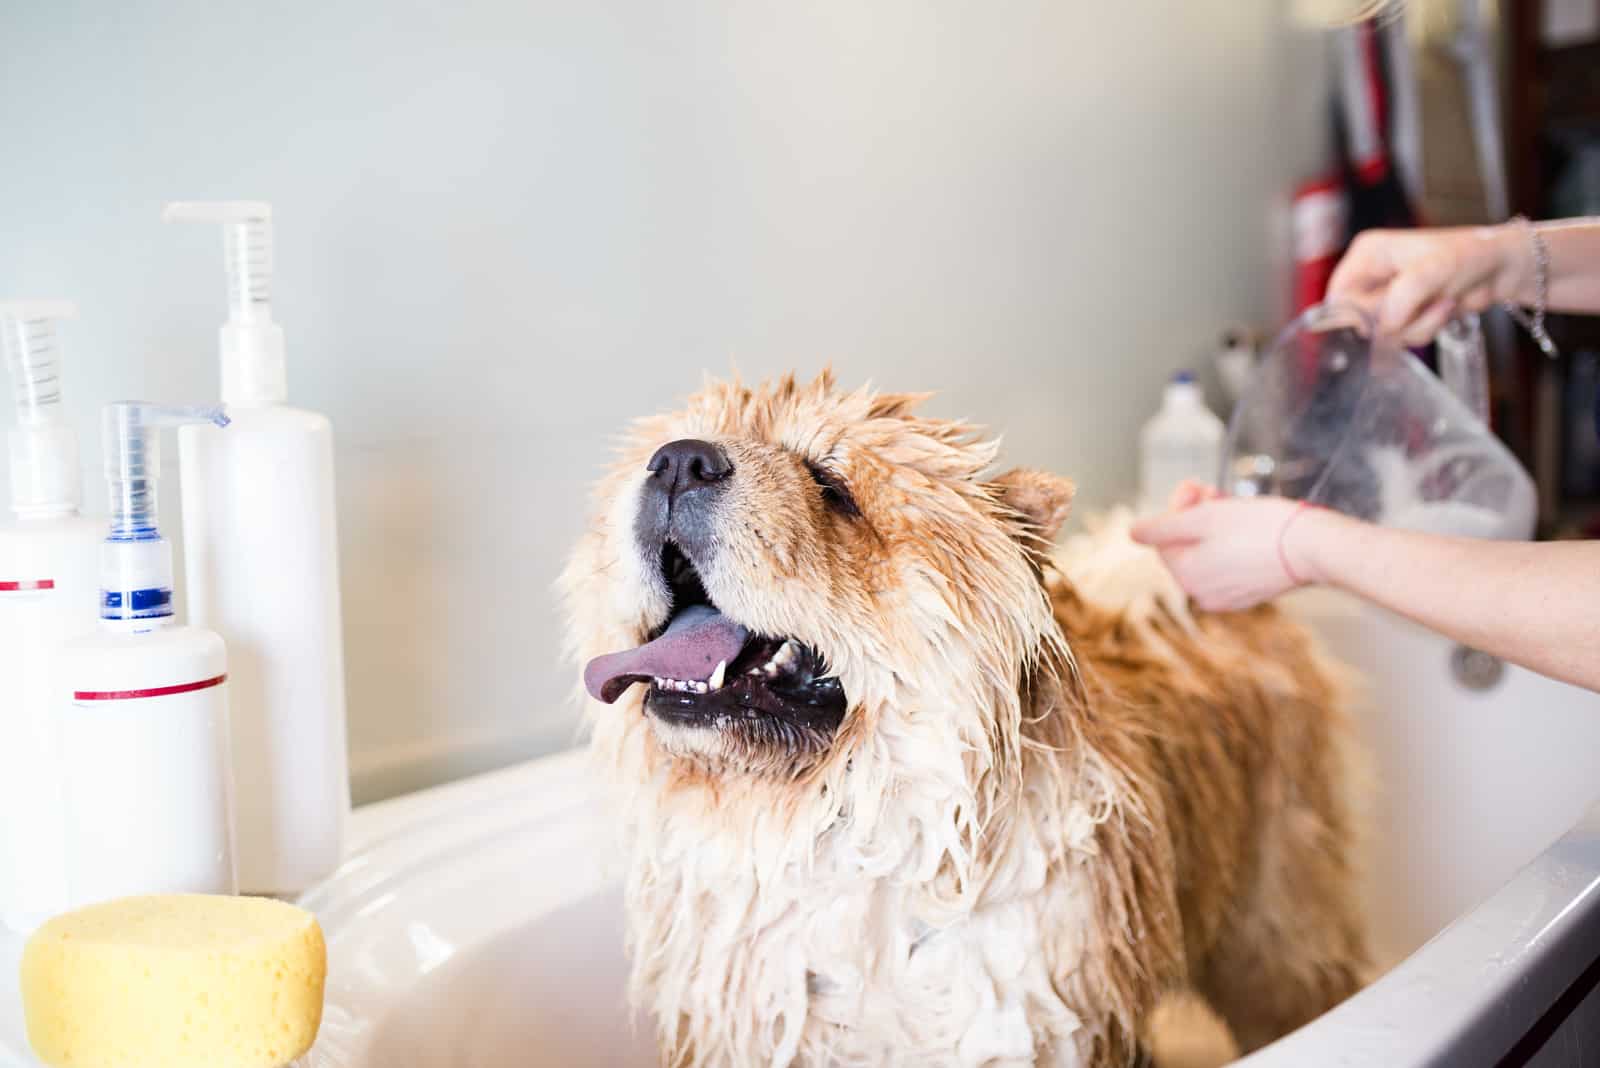 a cute dog bathes in a bathtub